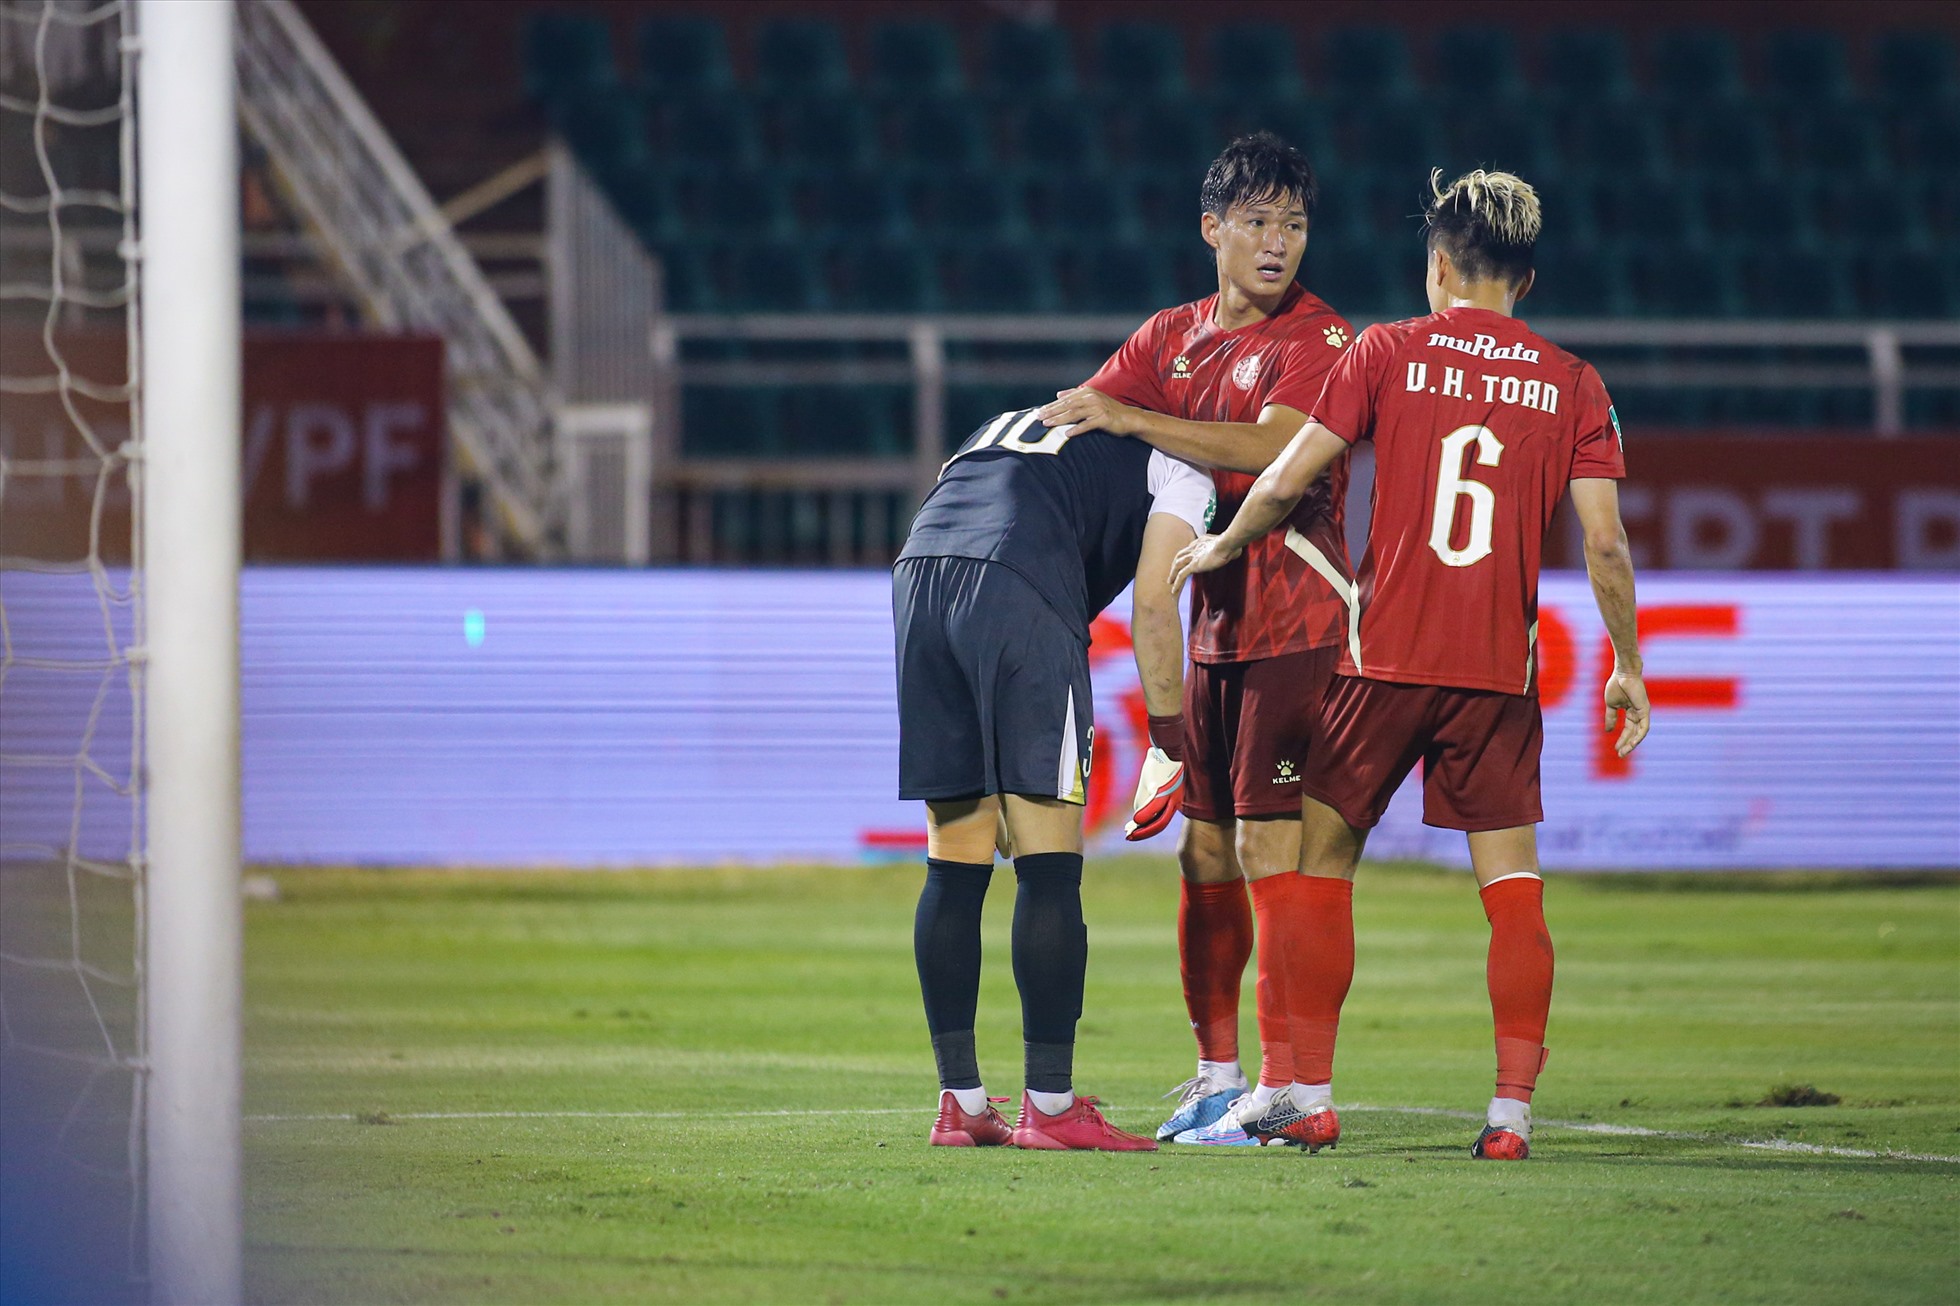 Bất ngờ đã xảy ra trên chấm luân lưu khi câu lạc bộ TP Hồ Chí Minh sút hỏng cả 3 quả, qua đó nhường tấm vé đi tiếp cho đội Bà Rịa - Vũng Tàu khi thất bại 0-3 trên chấm luân lưu.